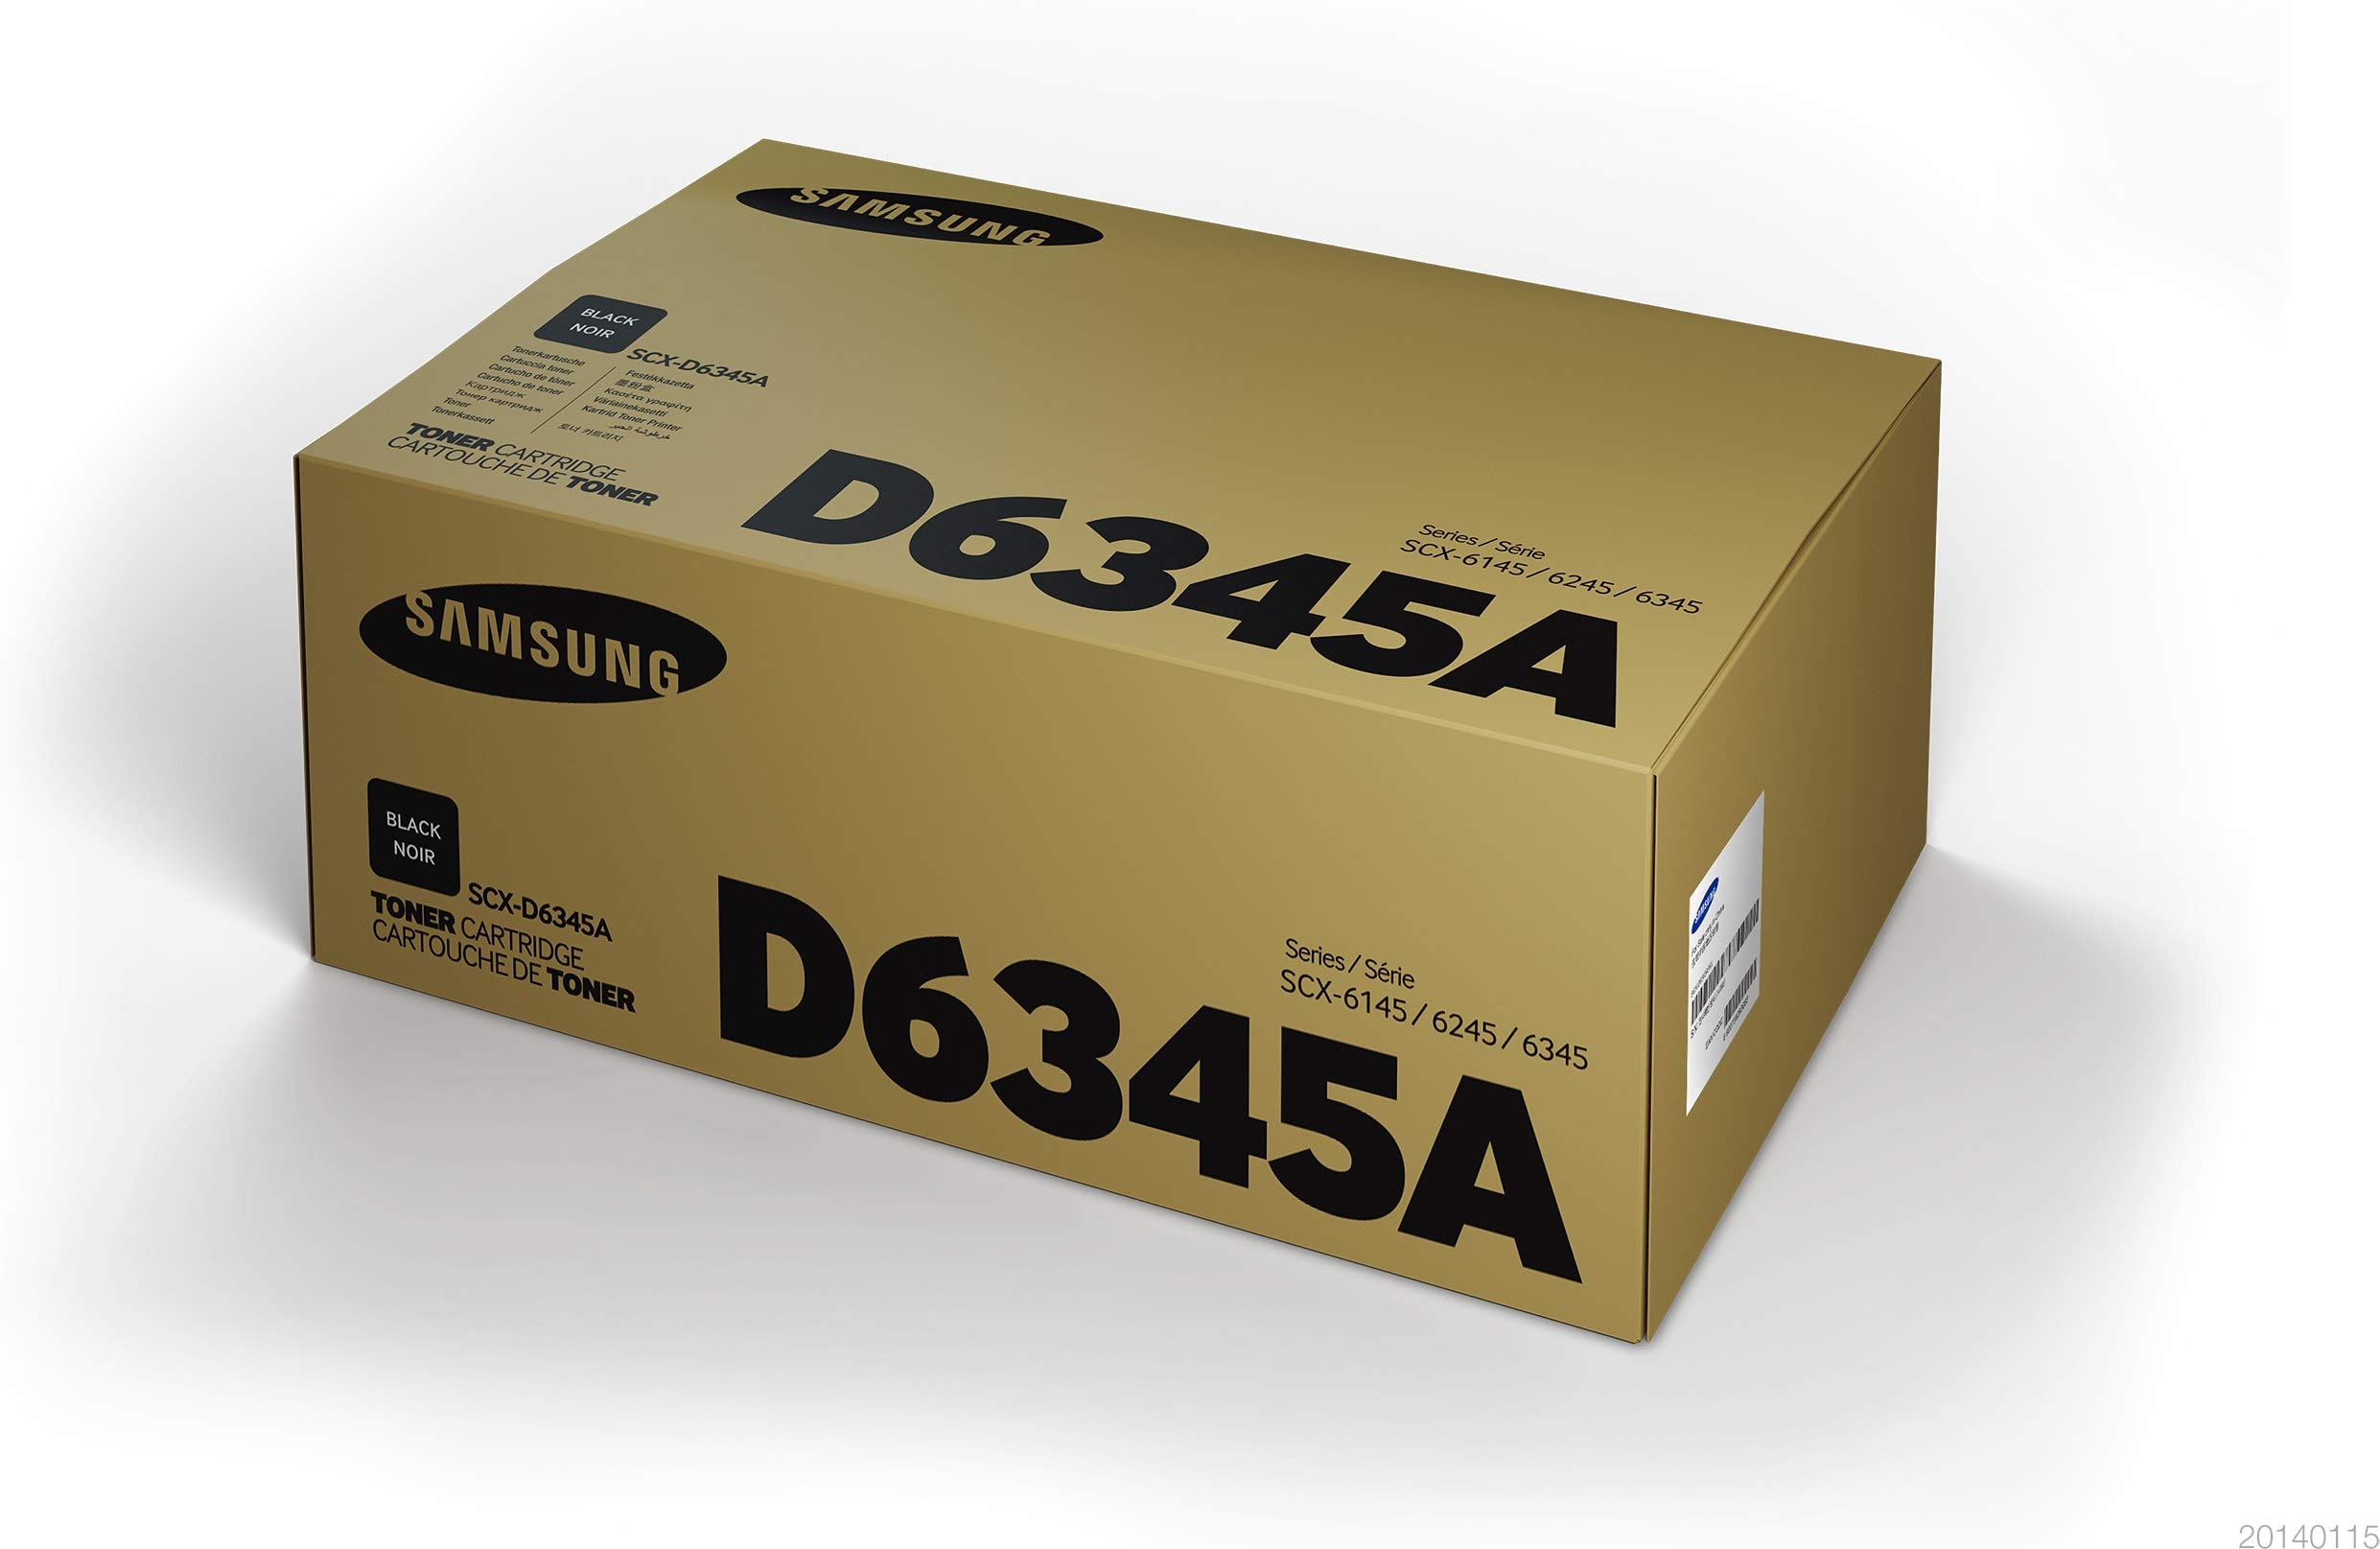 Toner laser Samsung scx-d6345a